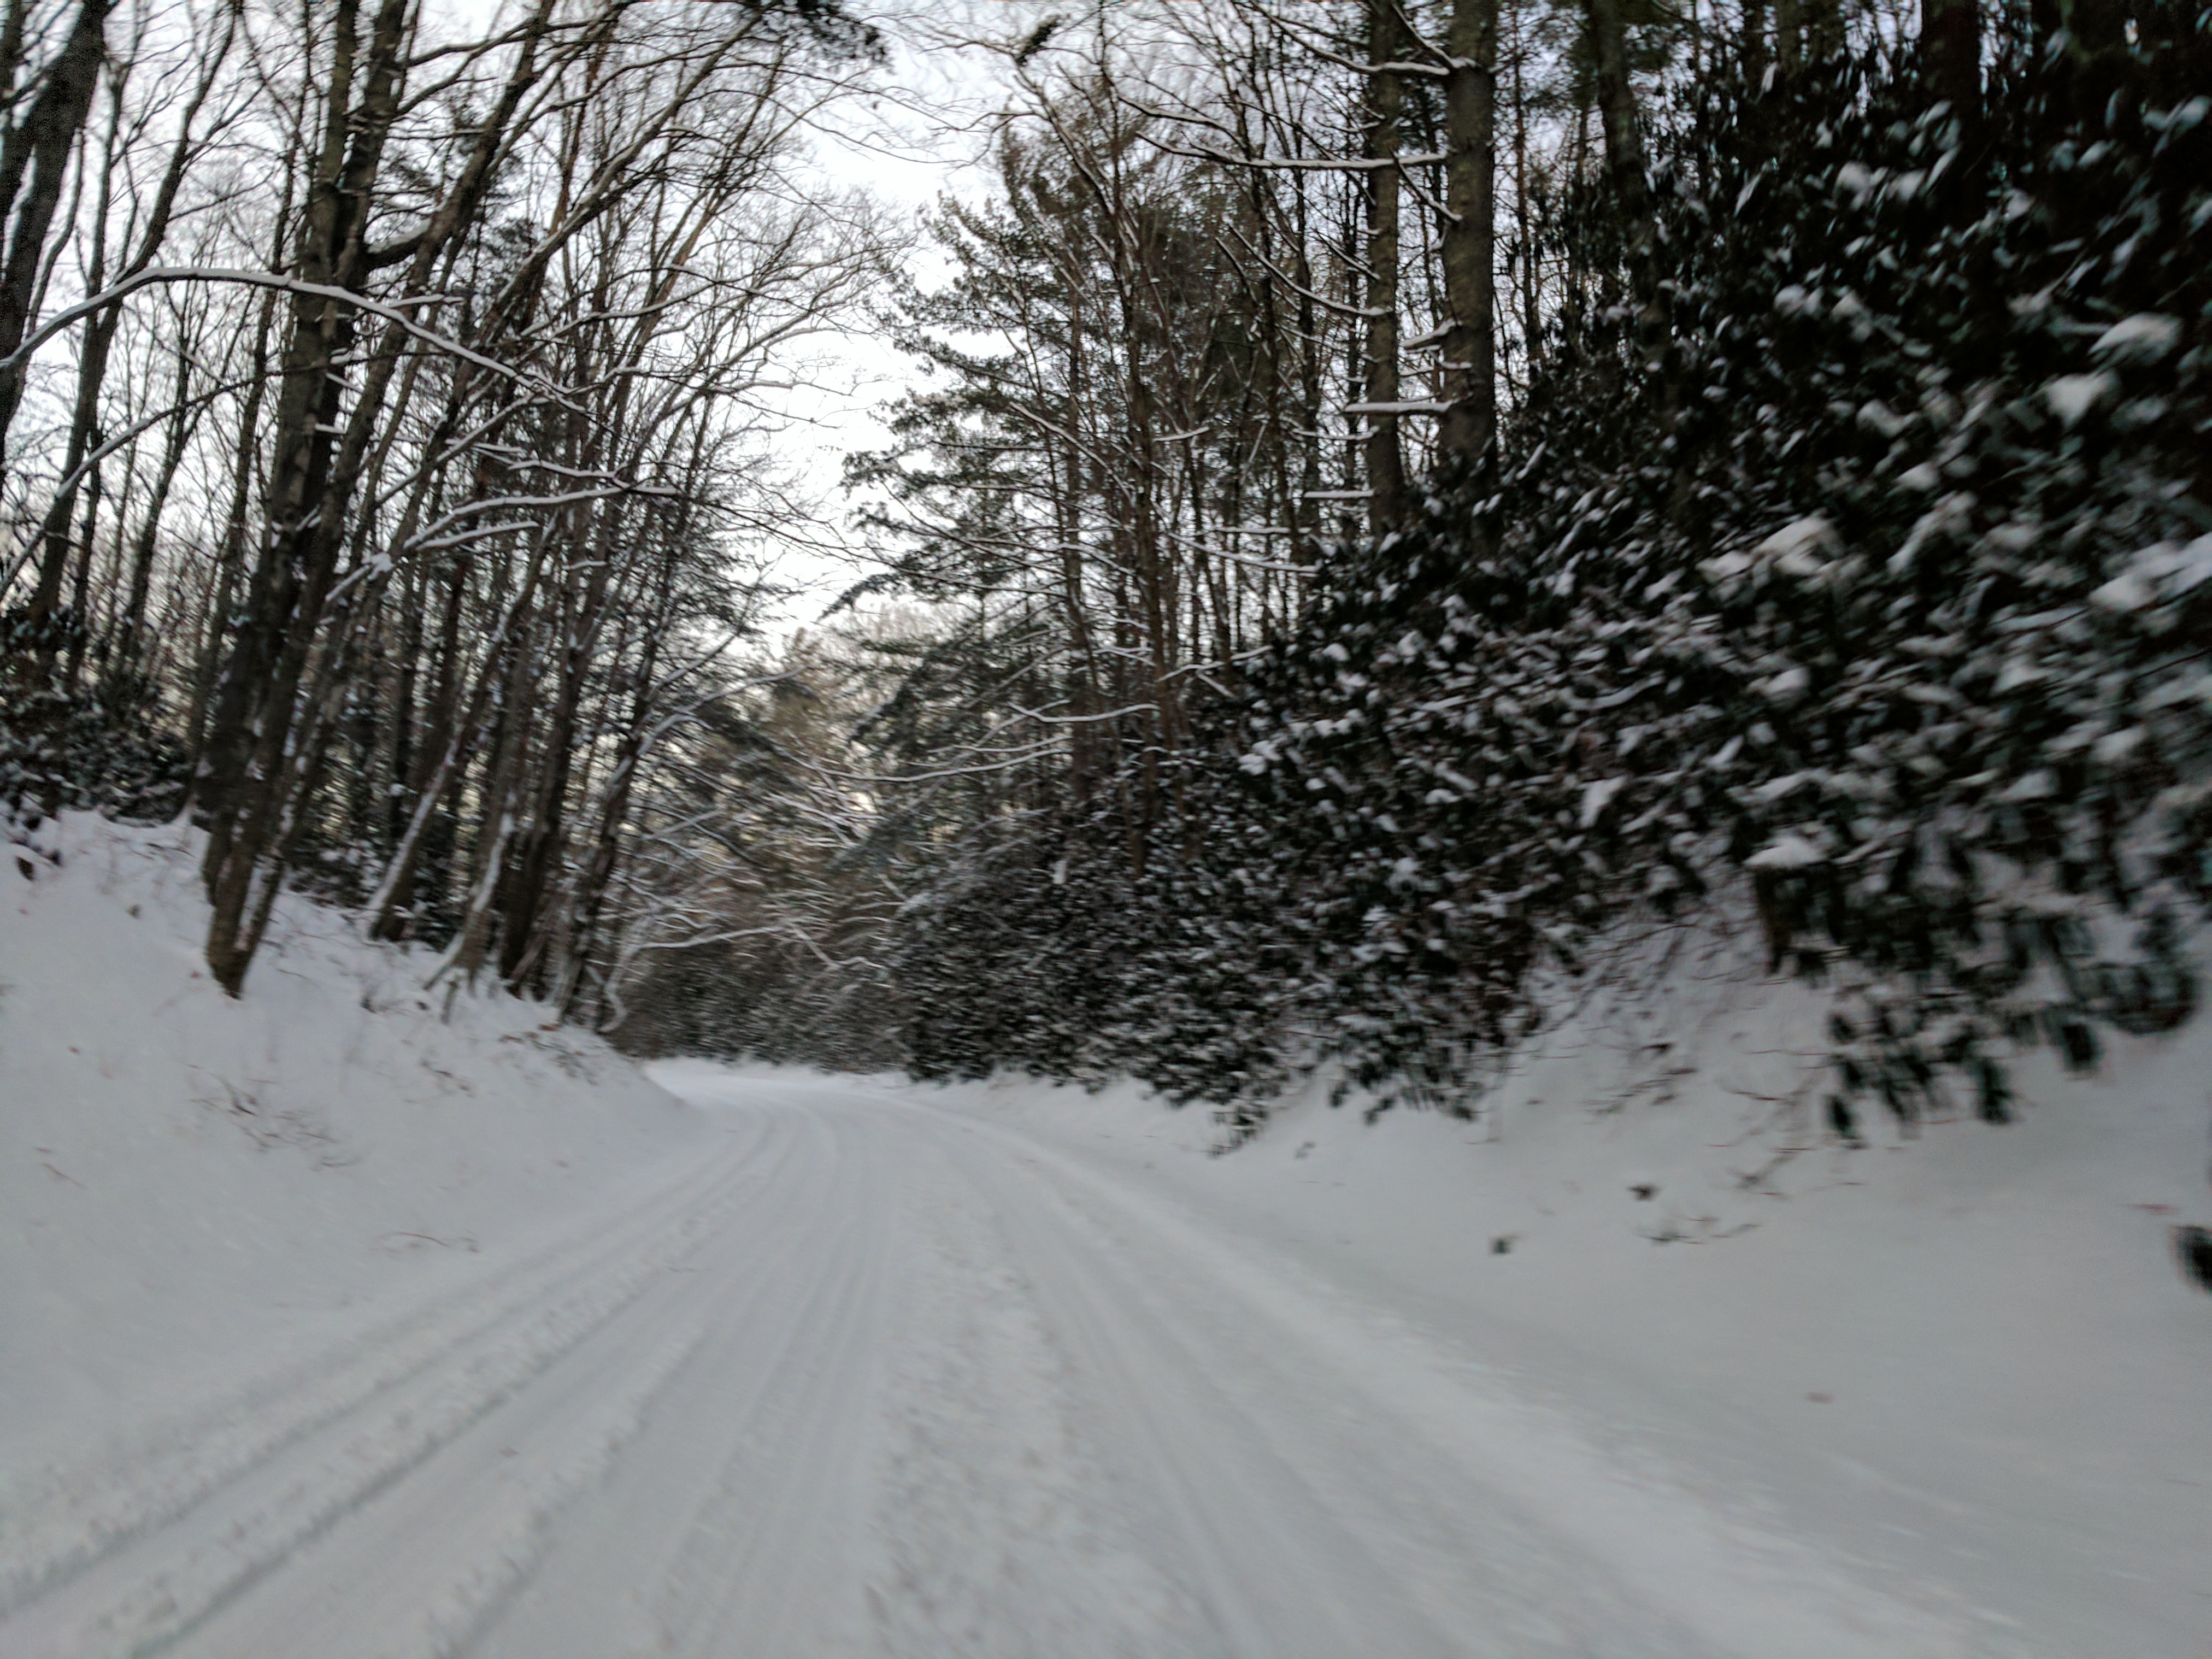 Blue Ridge Parkway Cabin Rentals | Winding Winter Road ...